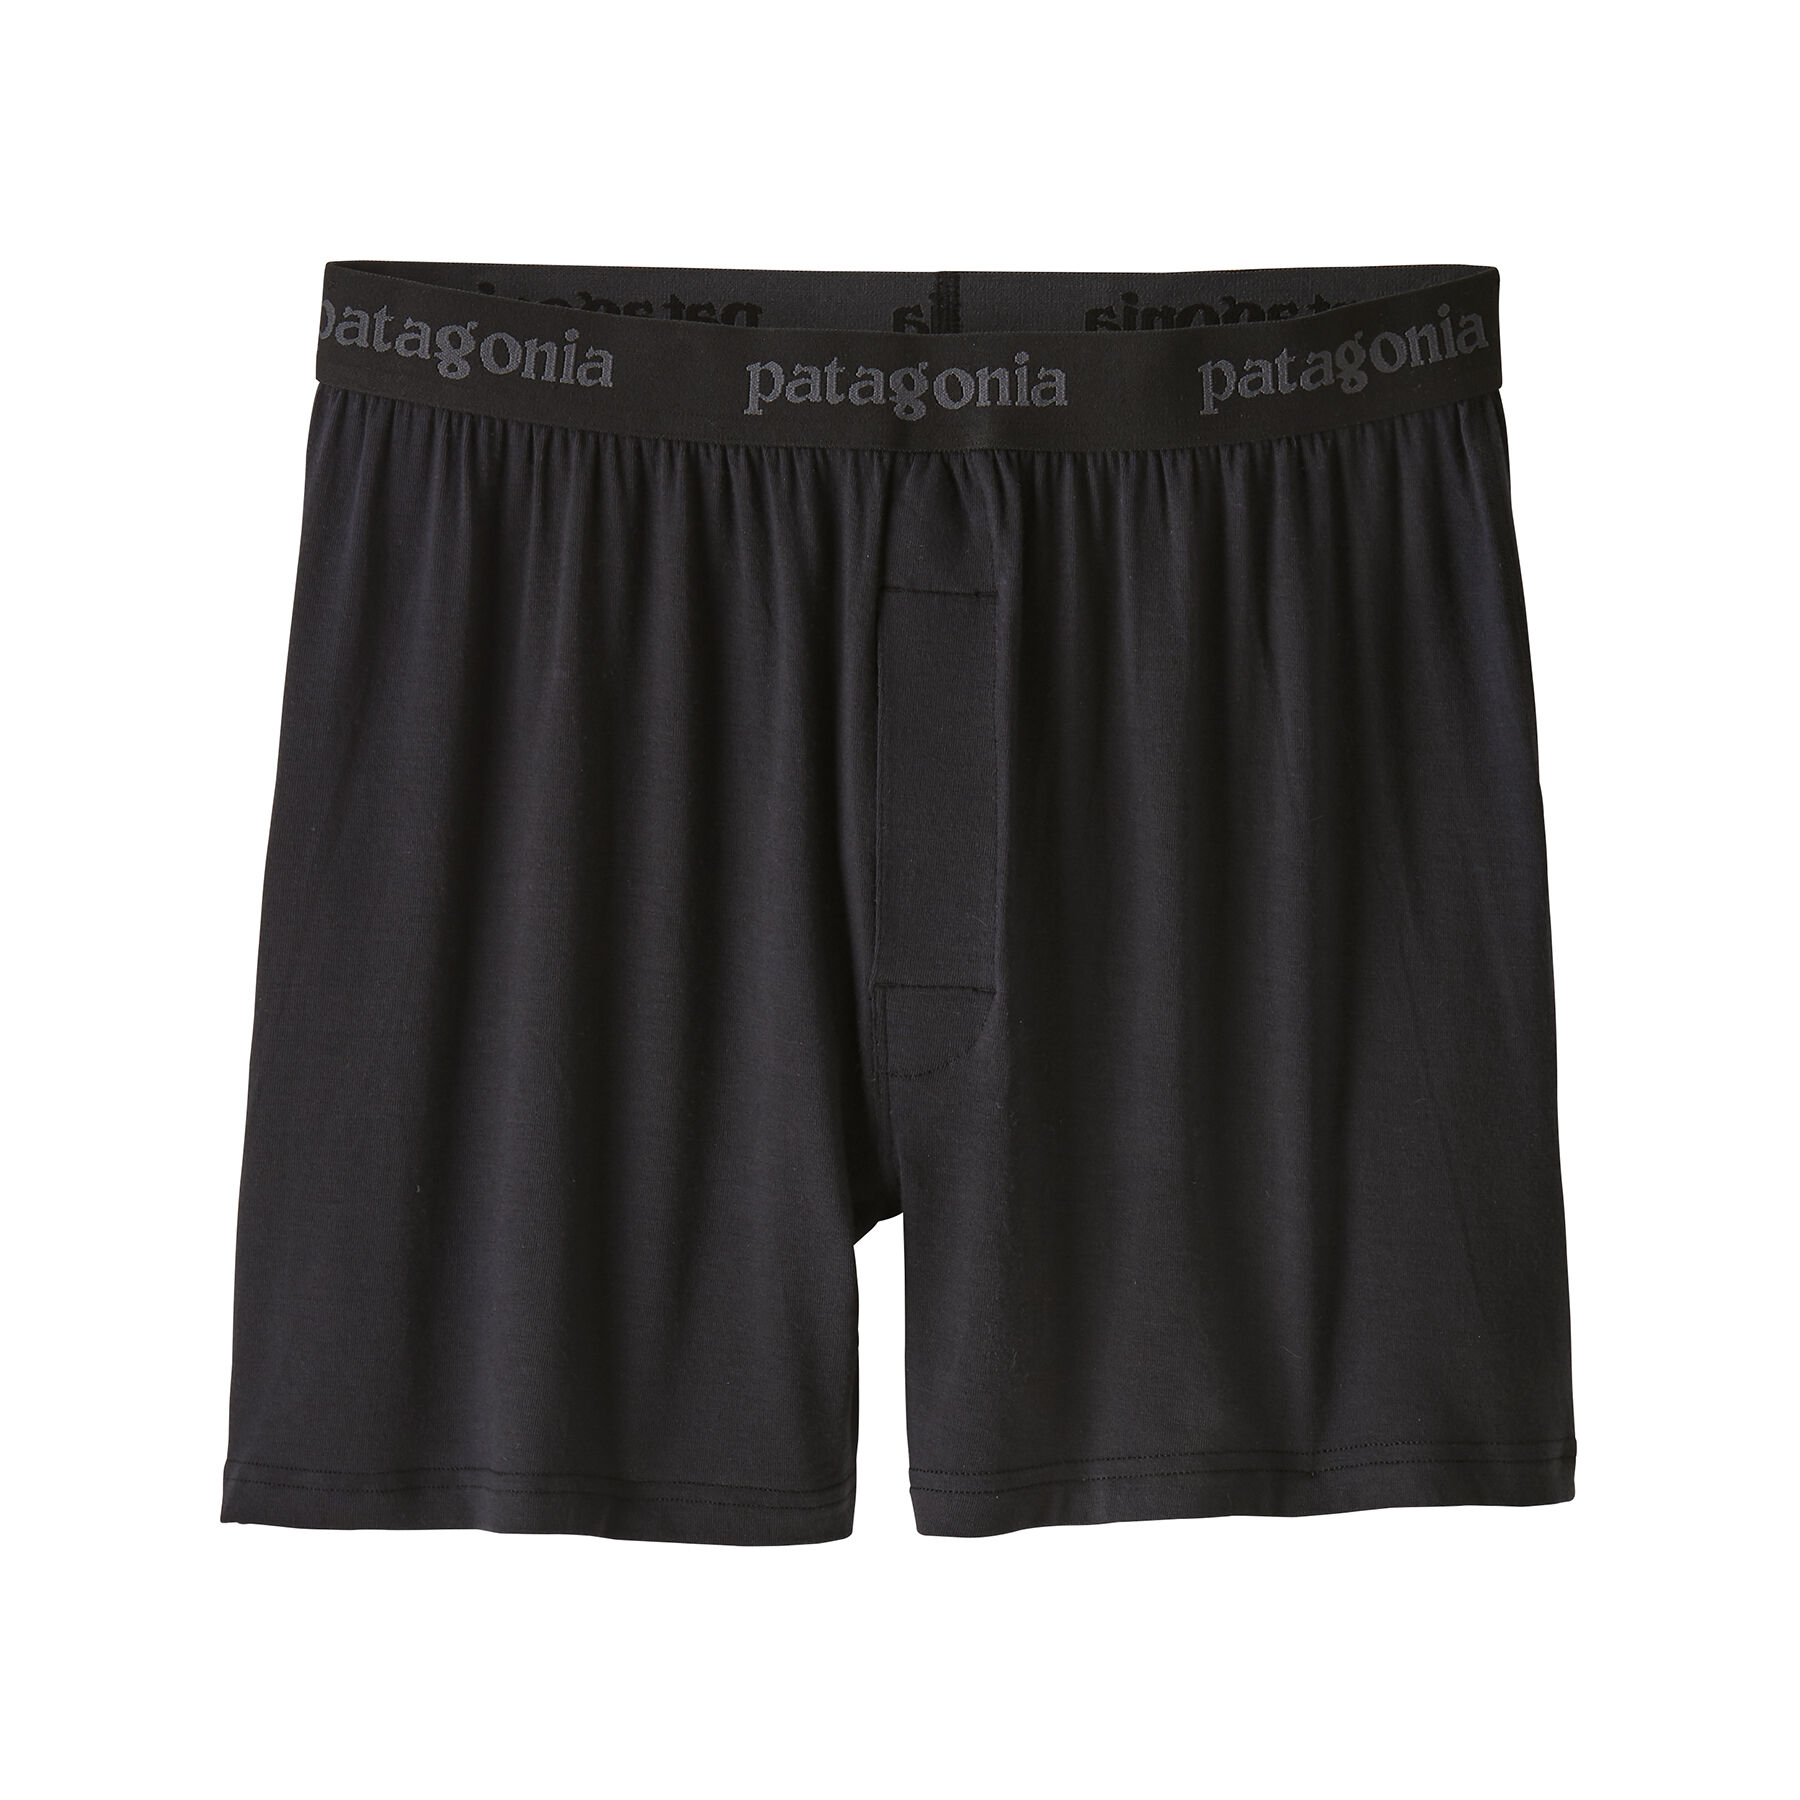 Patagonia Essential Boxers - Underwear - Men's